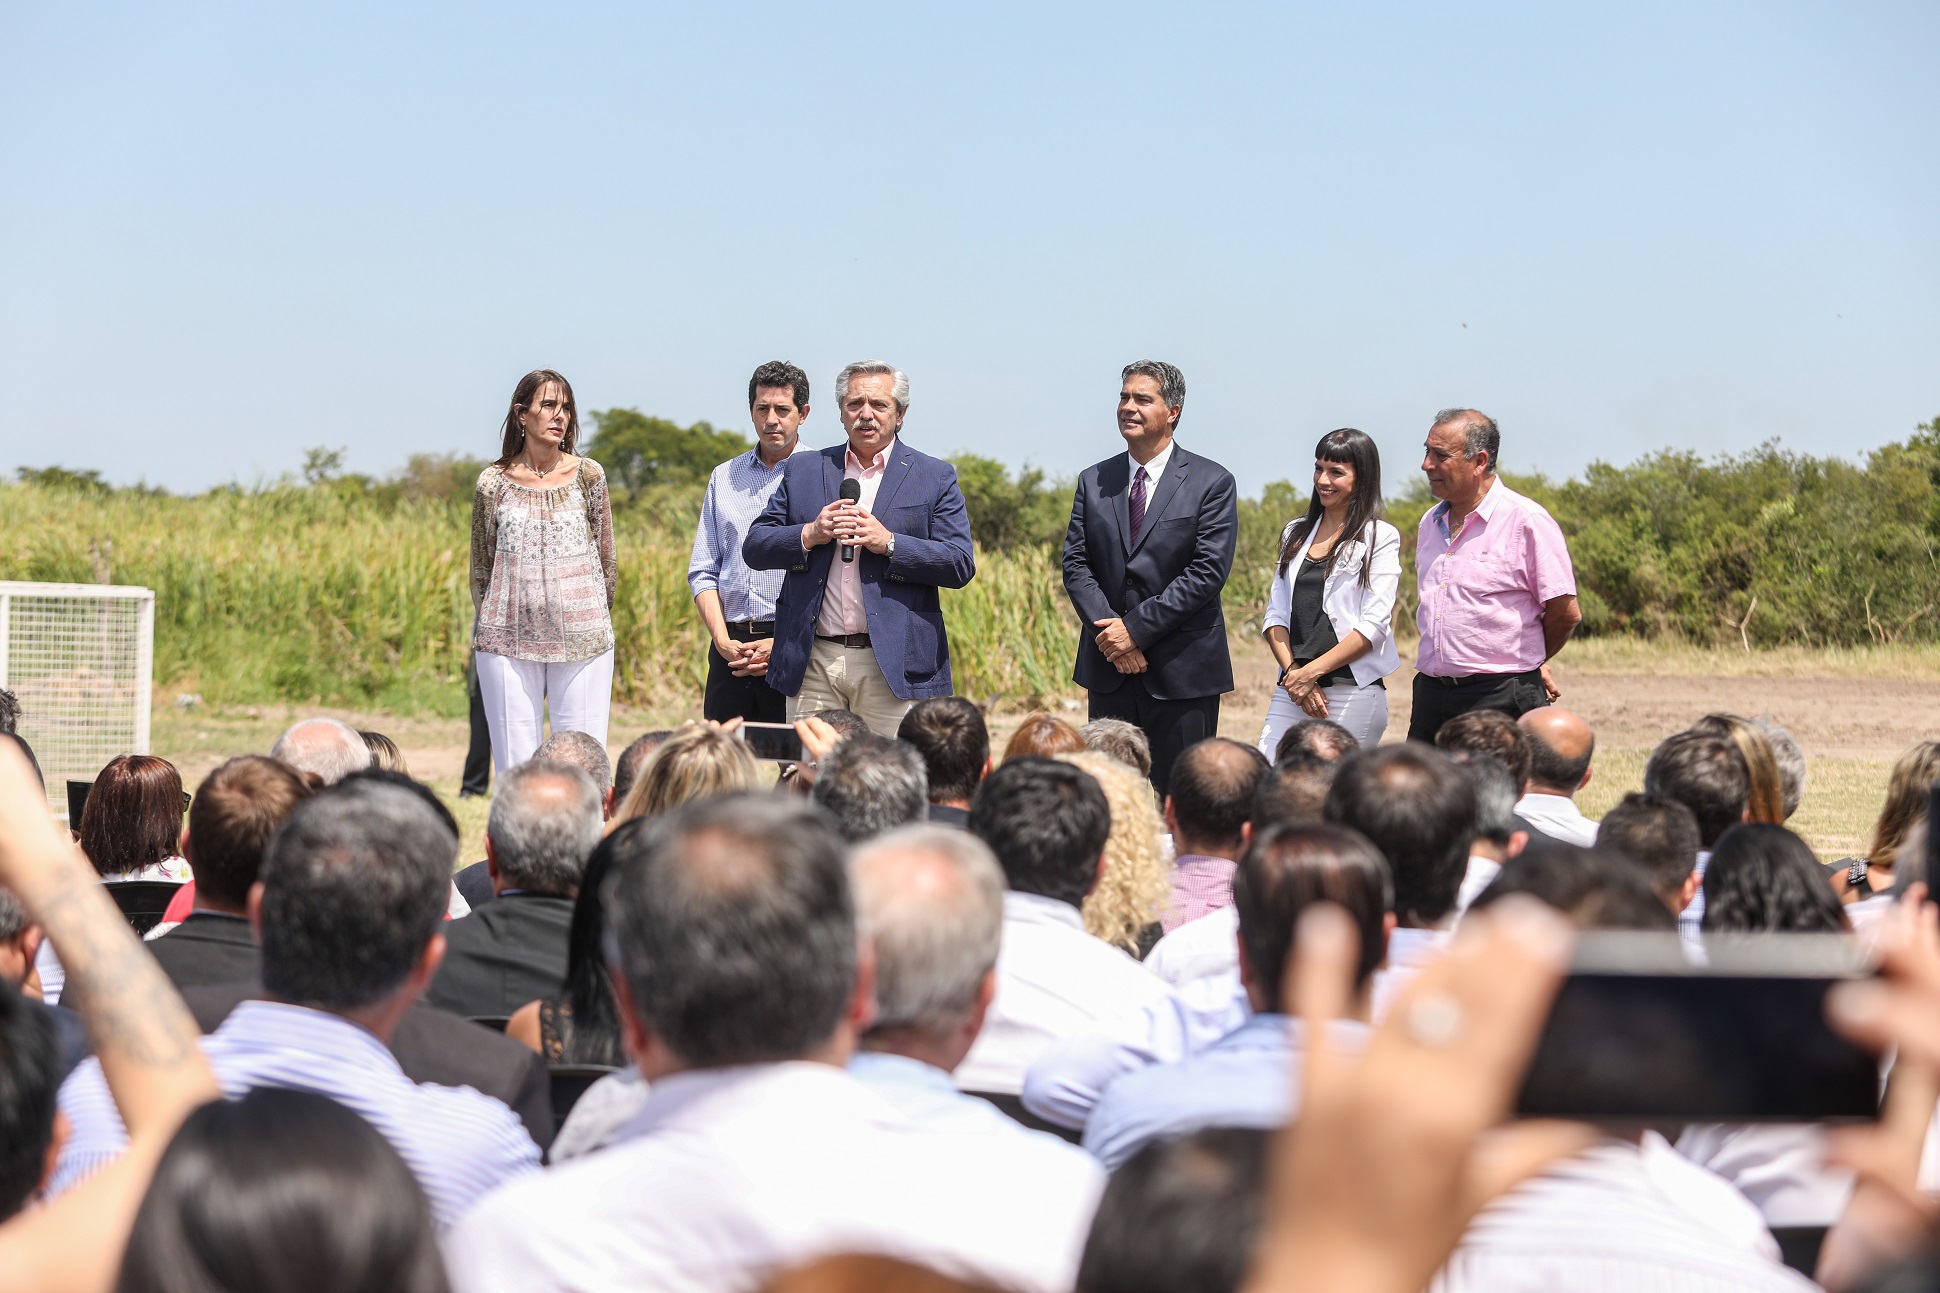 El Presidente inauguró un complejo de viviendas en Chaco